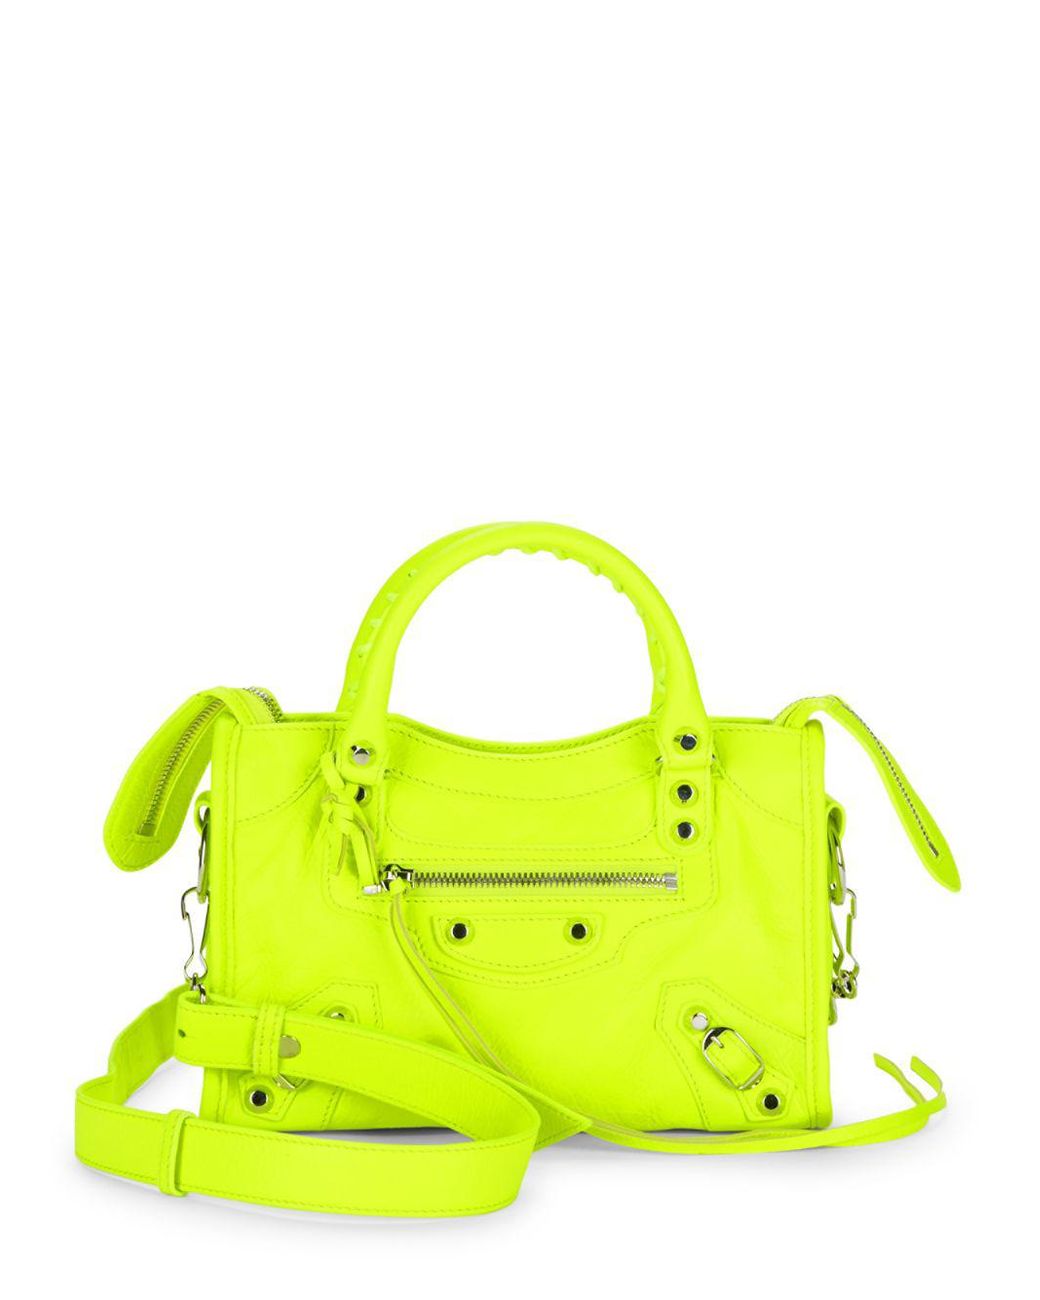 Balenciaga Neon Leather Bag in Yellow | Lyst